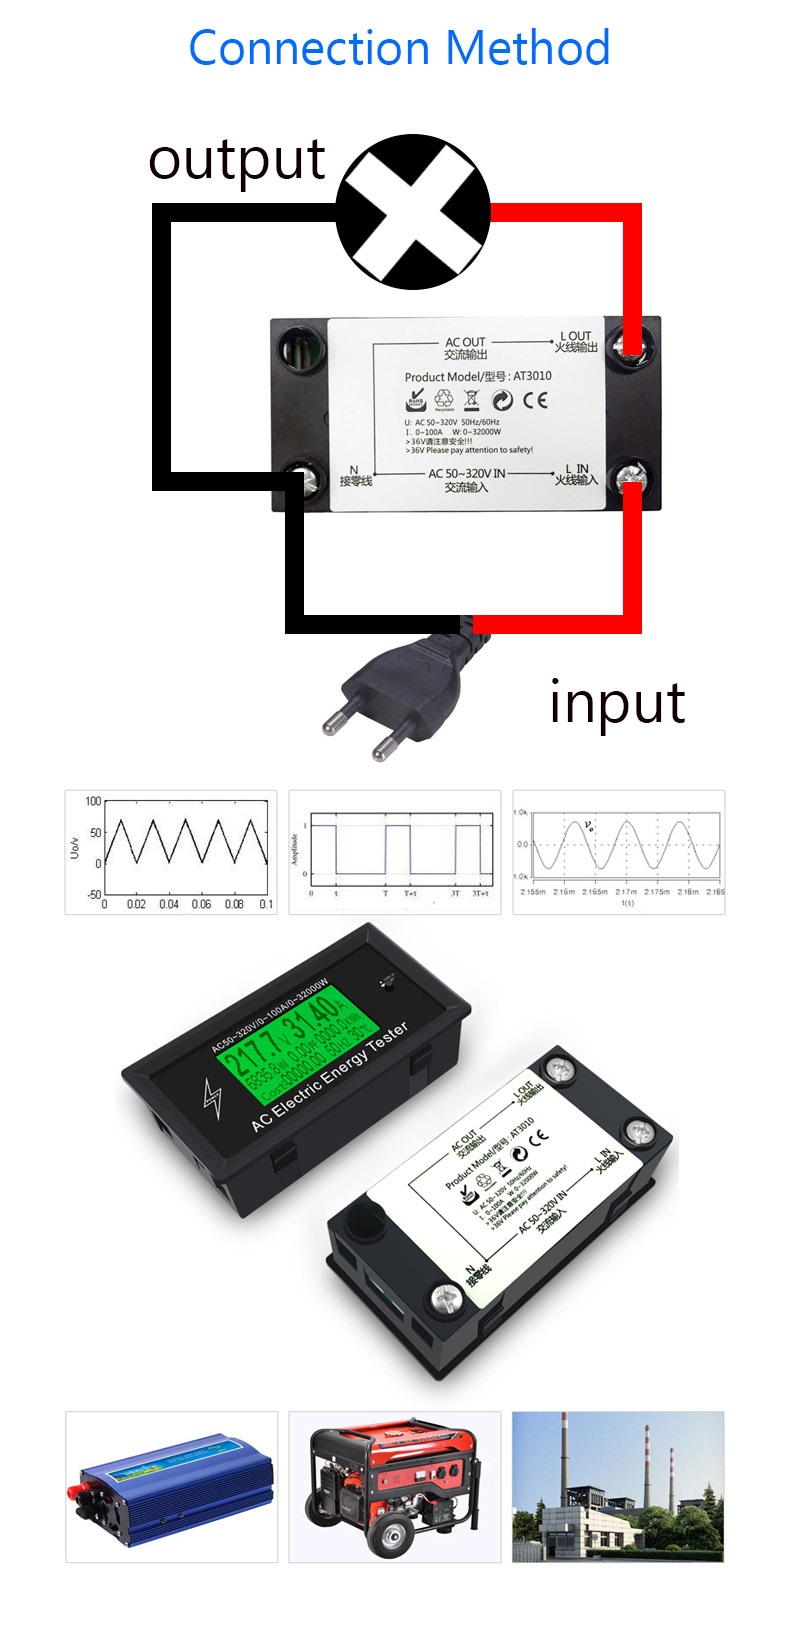 AT3010-AC50320V-100A-3KKW--Phone-App-AC-Meters-Digital-Voltage-Meters-indicator-Power-Energy-Meter-V-1390443-3